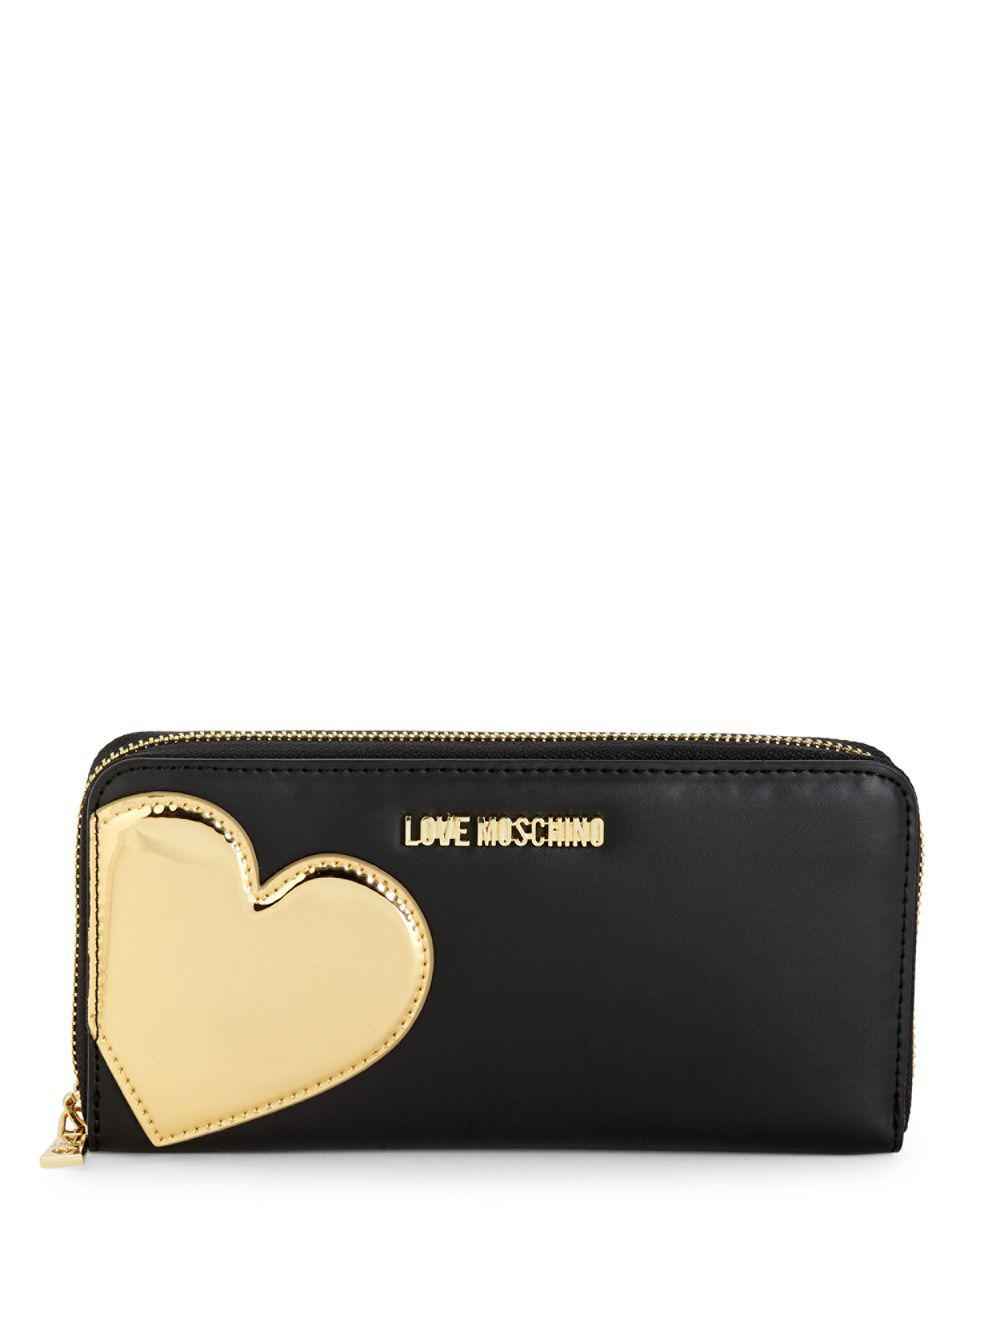 Love Moschino Heart Appliqué Zip-around Wallet in Black Gold (Black) - Lyst